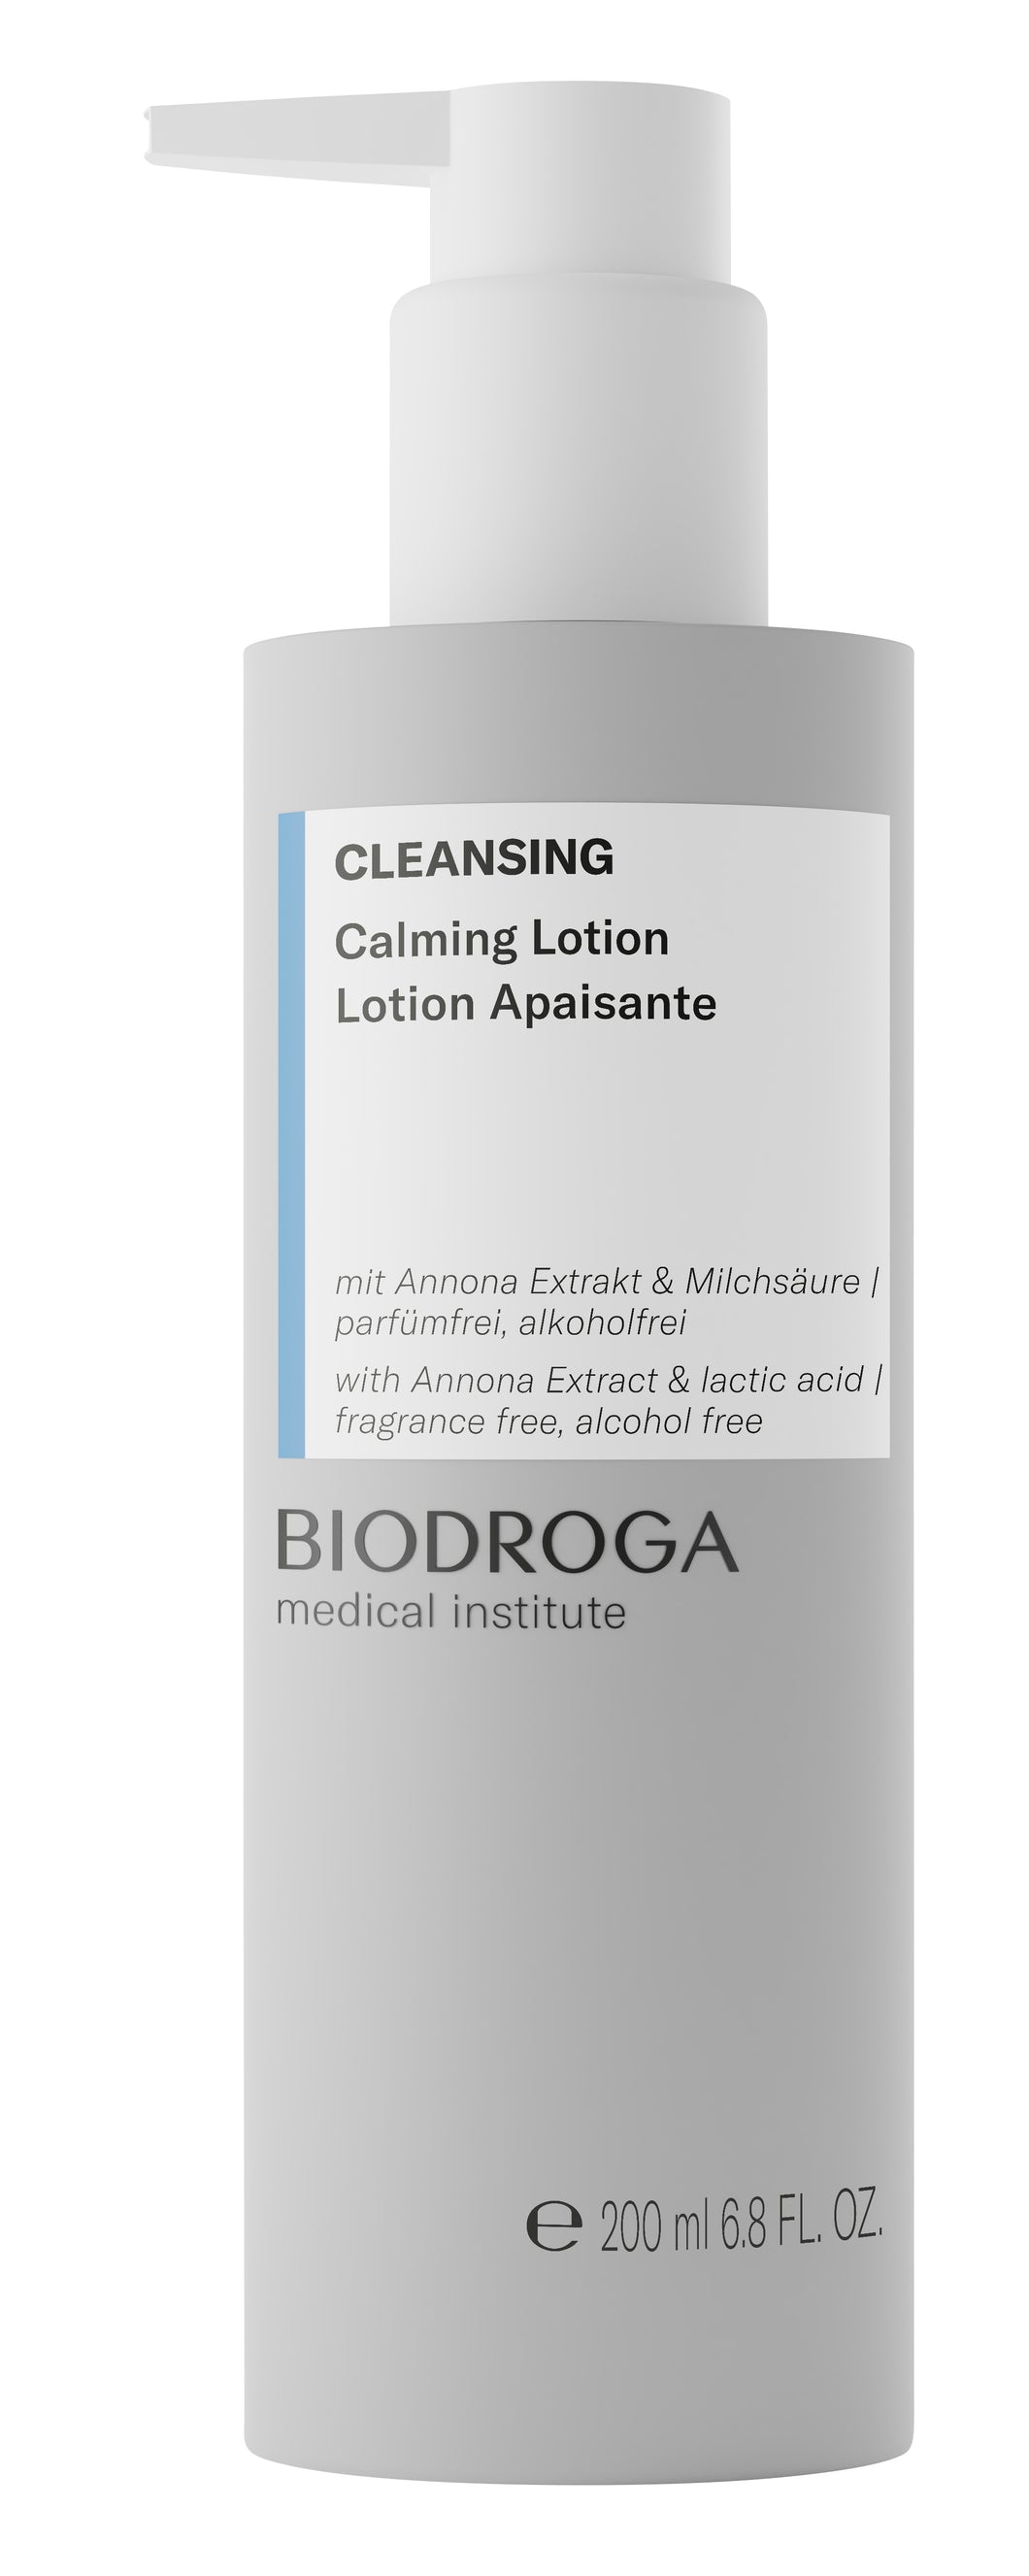 Biodroga Cleansing Medical  Calming Lotion